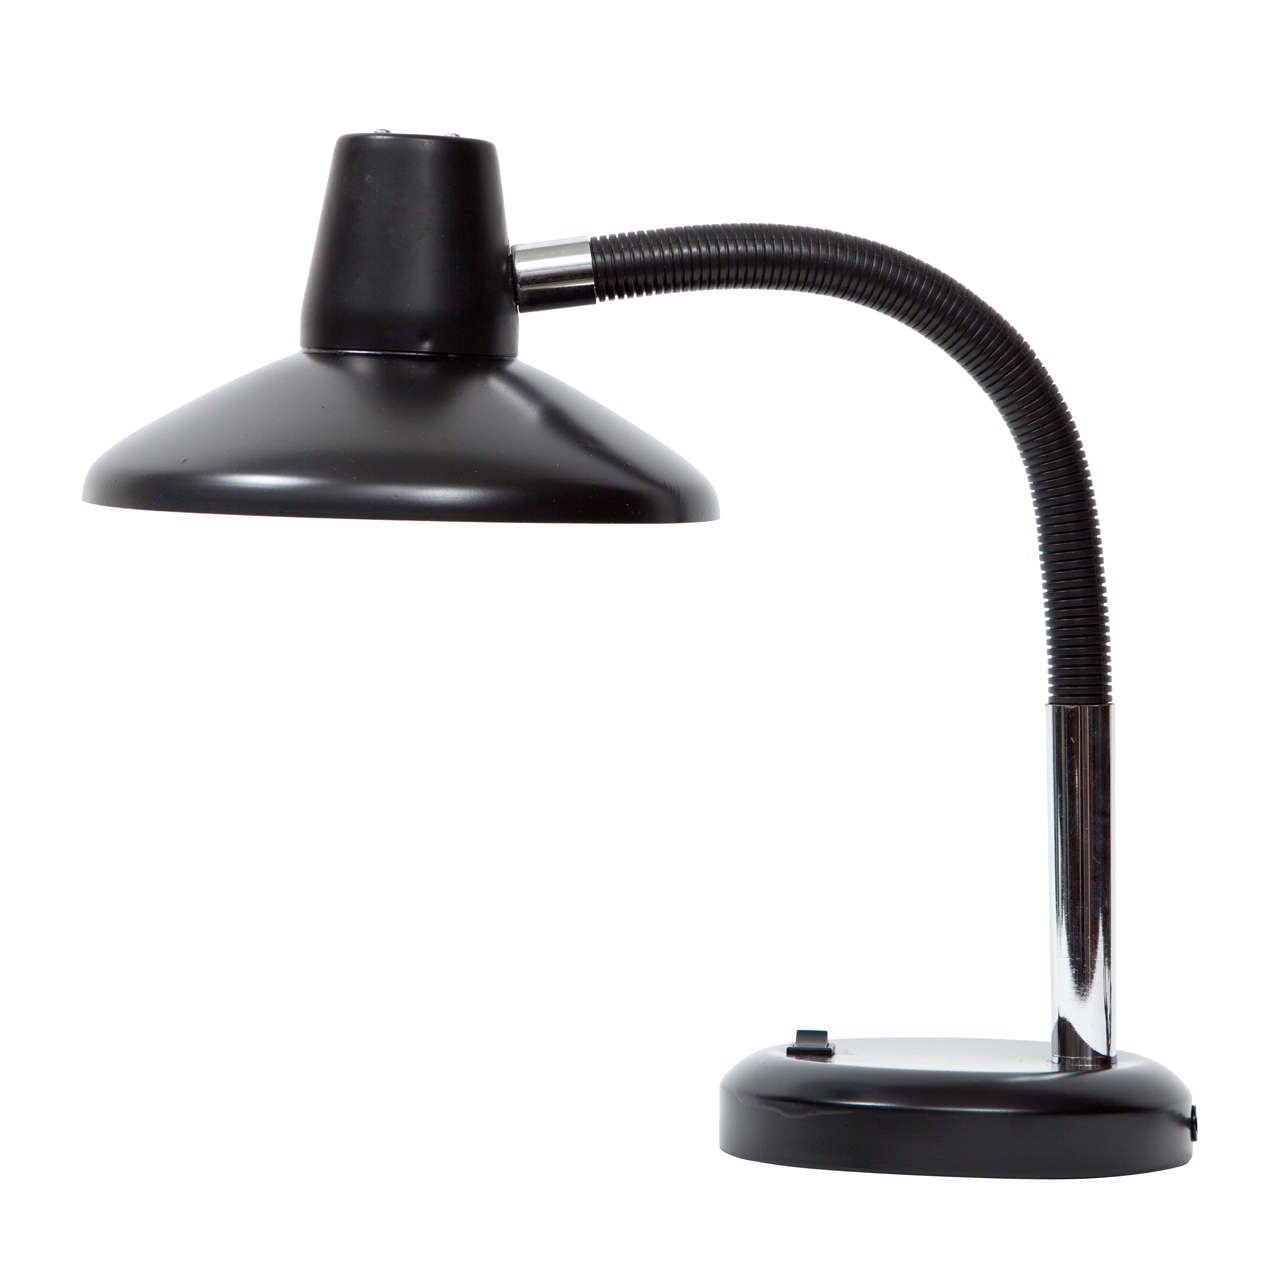 Clean-Lined Black Gooseneck Desk Lamp For Sale at 1stdibs